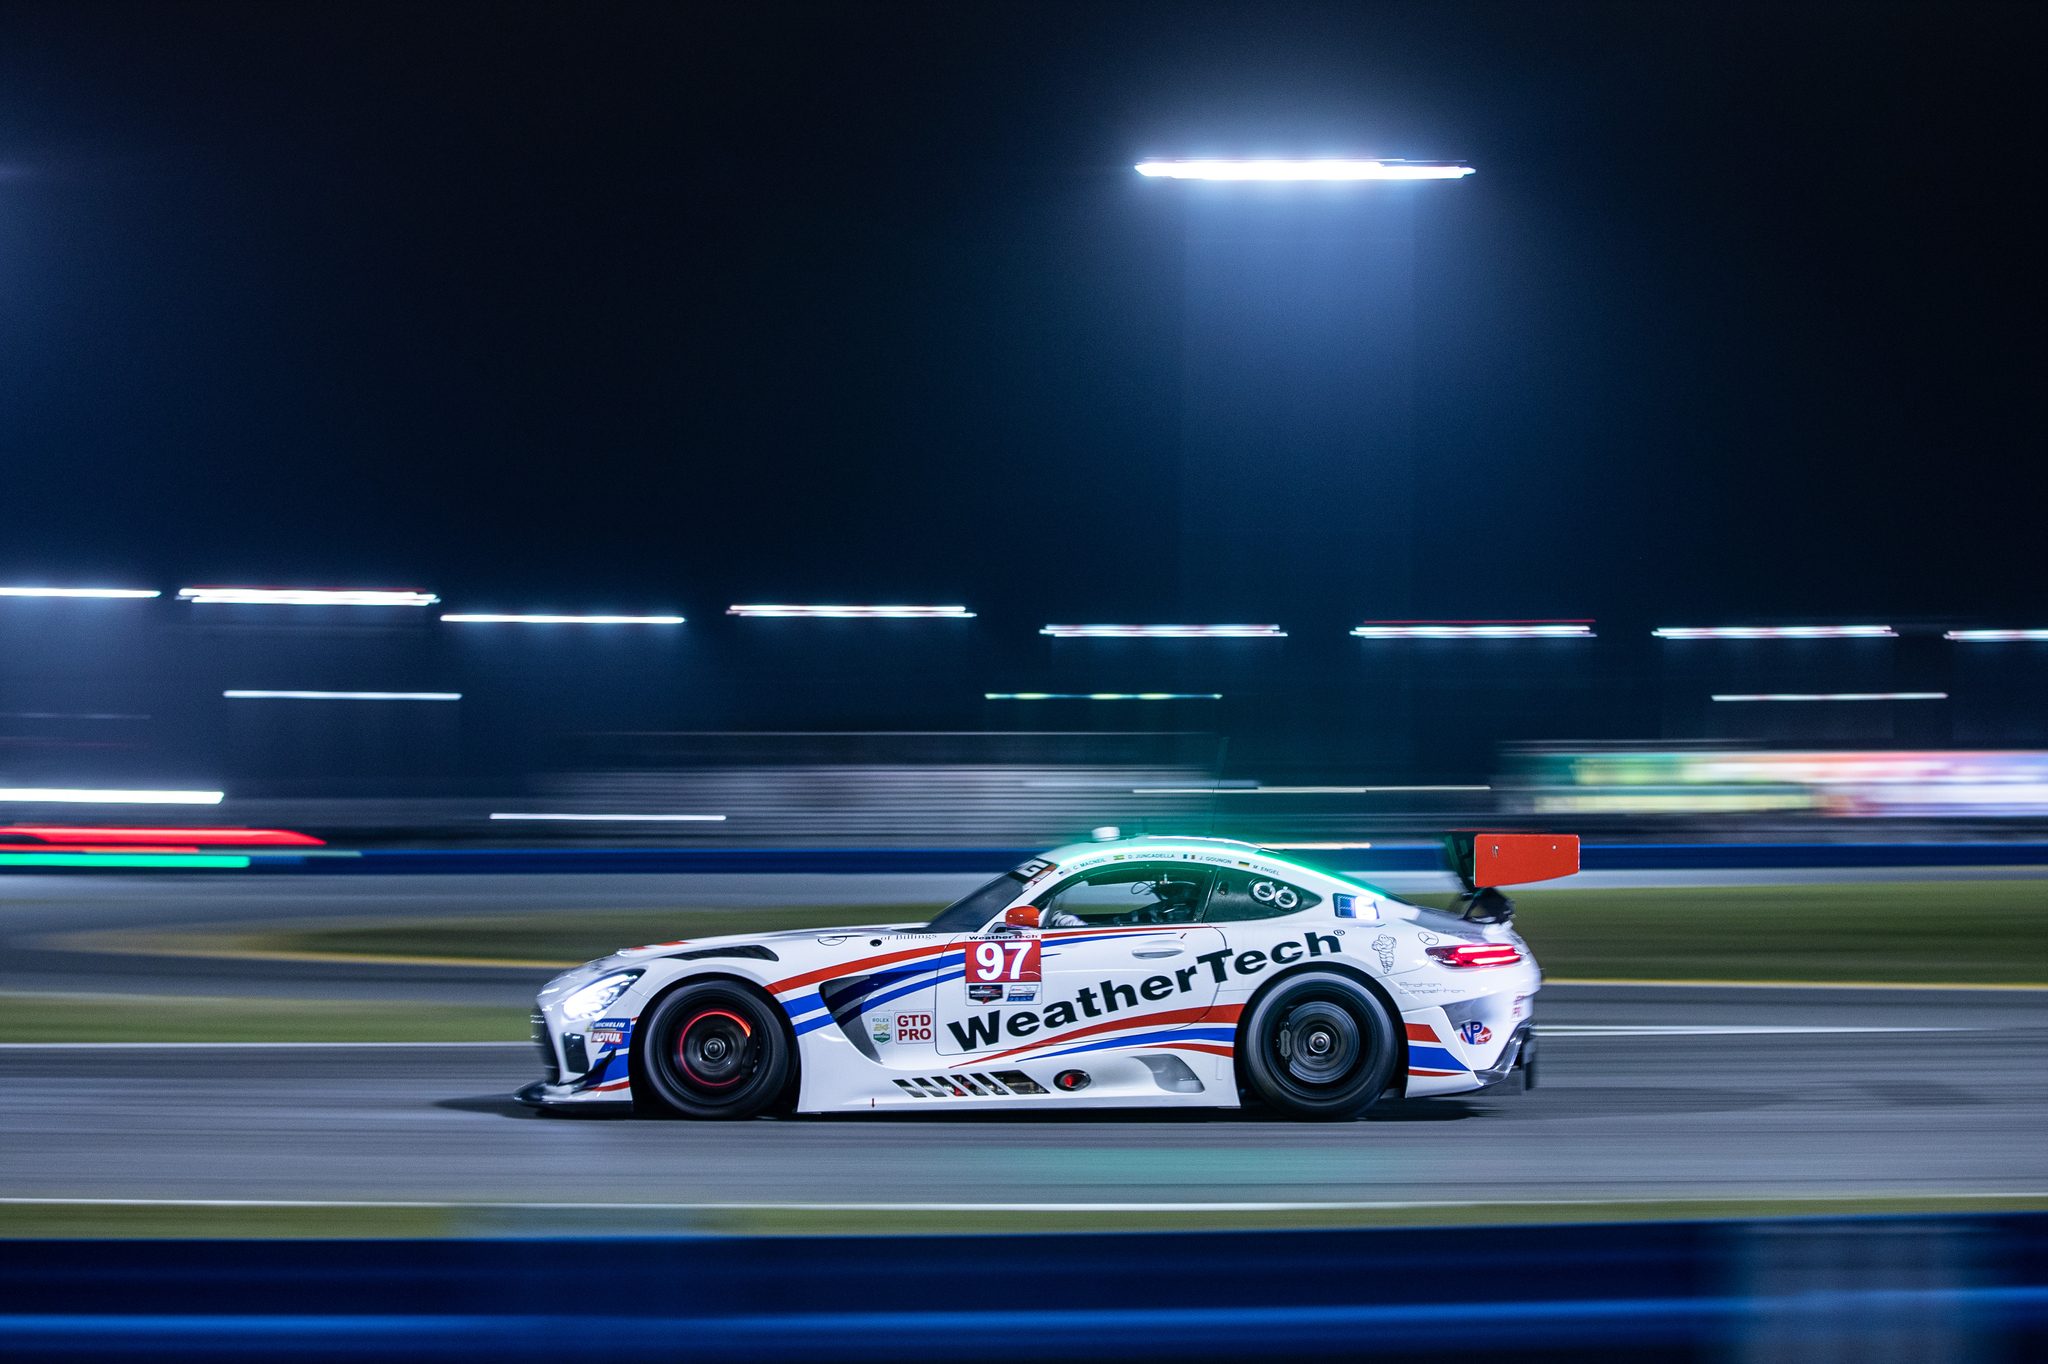 Mercedes-AMG startet mit sechs GT3 Fahrzeugen in Daytona